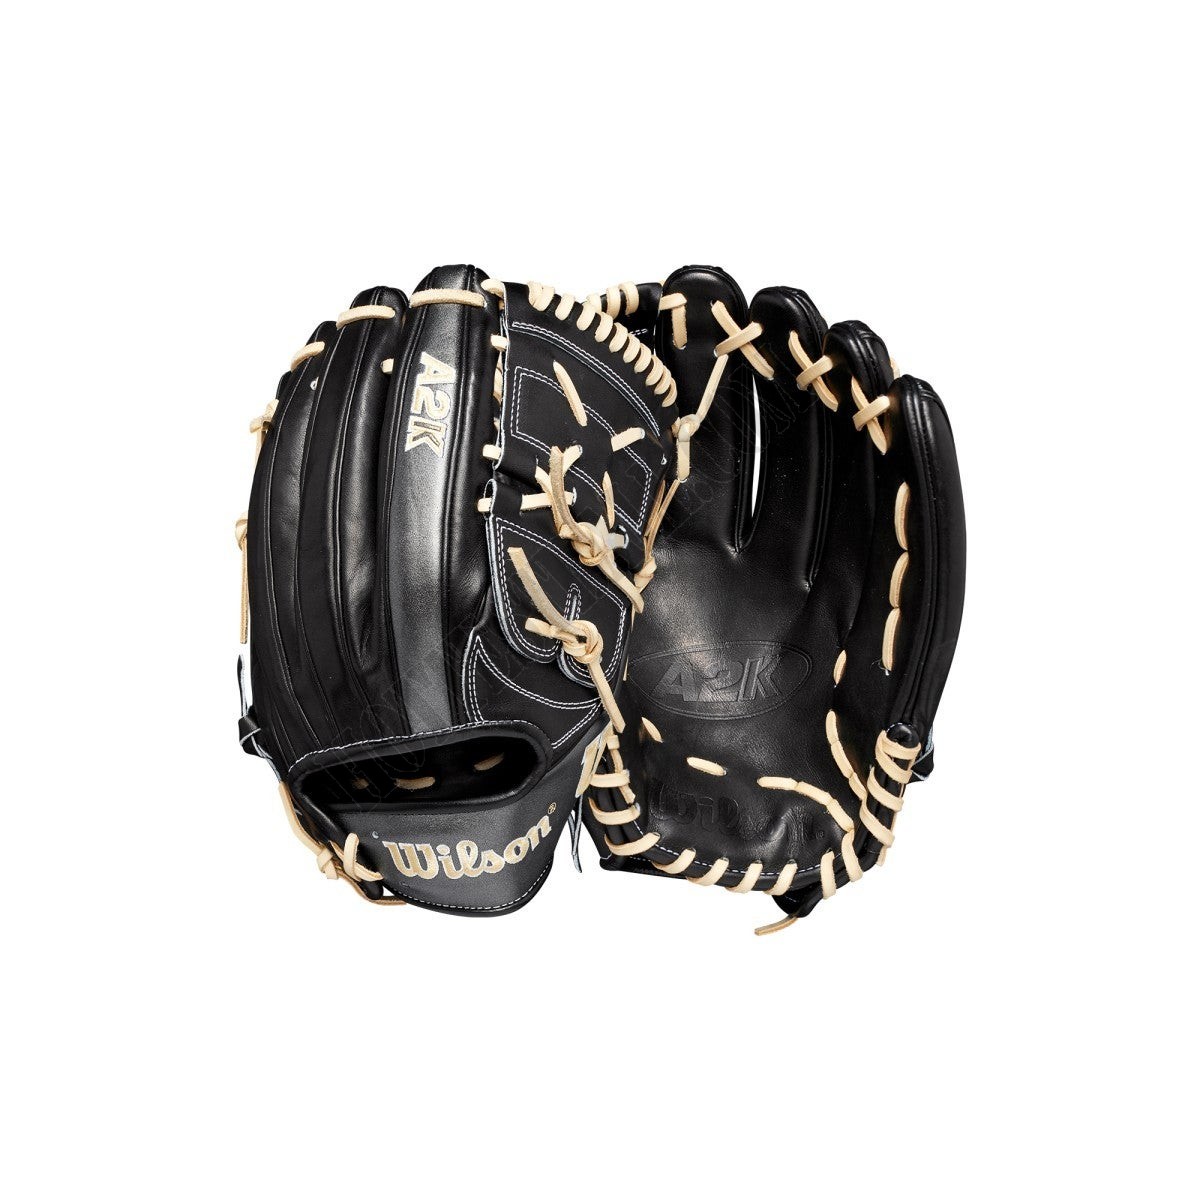 2022 A2K B2 12" Pitcher's Baseball Glove ● Wilson Promotions - 2022 A2K B2 12" Pitcher's Baseball Glove ● Wilson Promotions